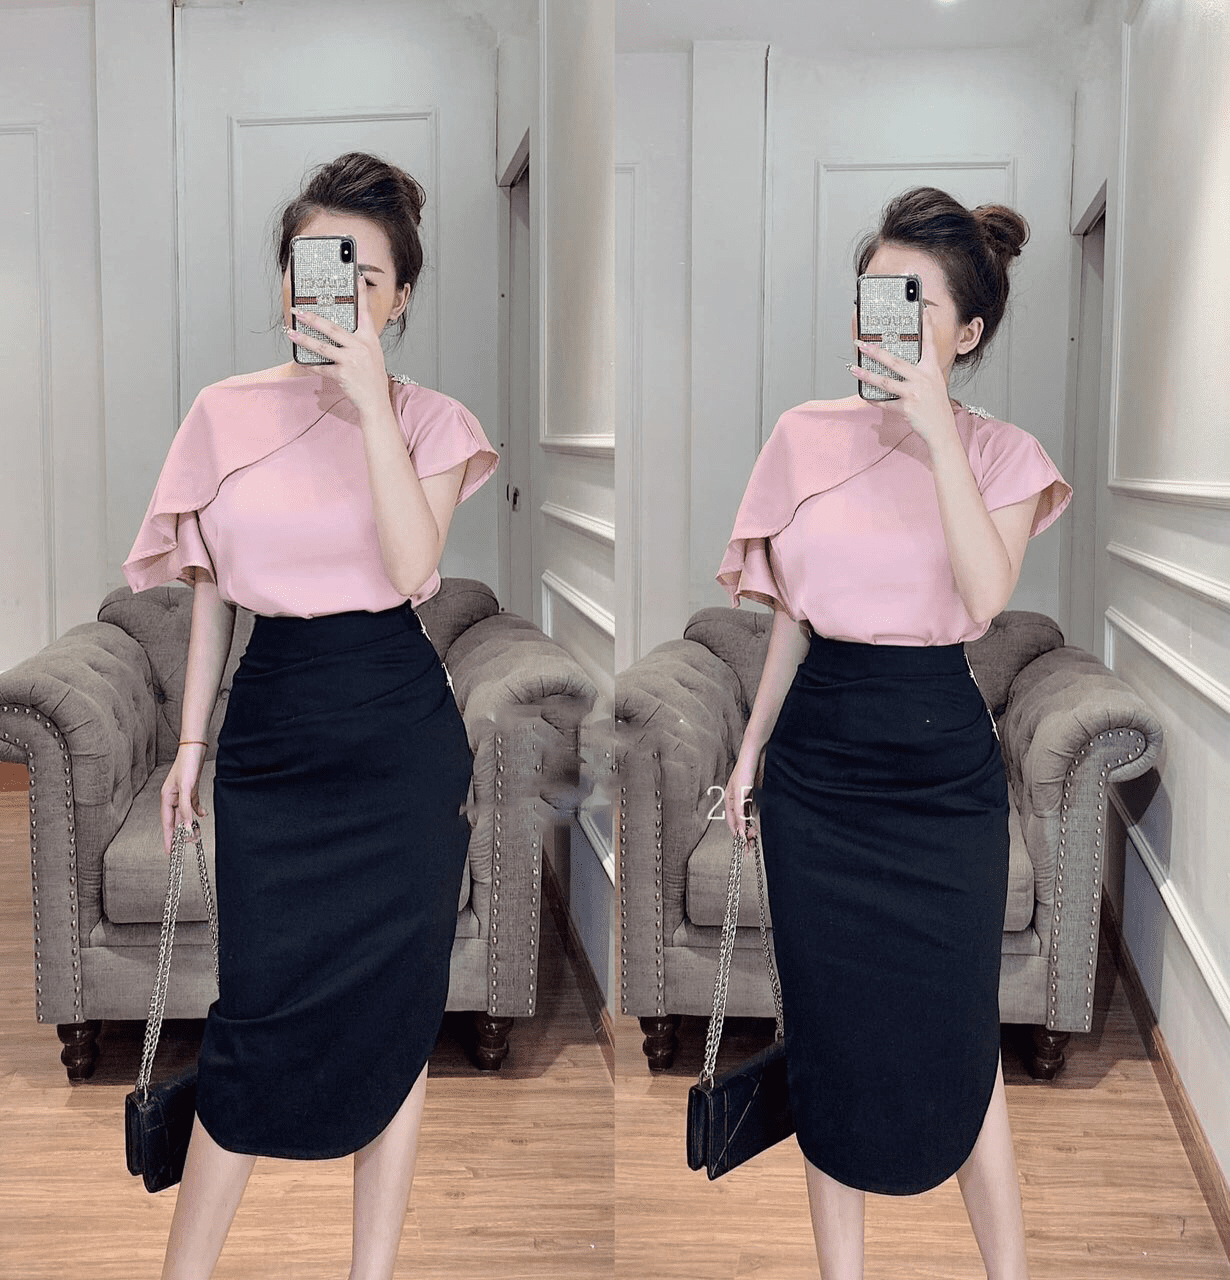 Váy Đầm Body Ôm 2 dây xẻ tà cao cấp sang trọng mới nhất 2020 tphcm, Hà Nội  - YouTube